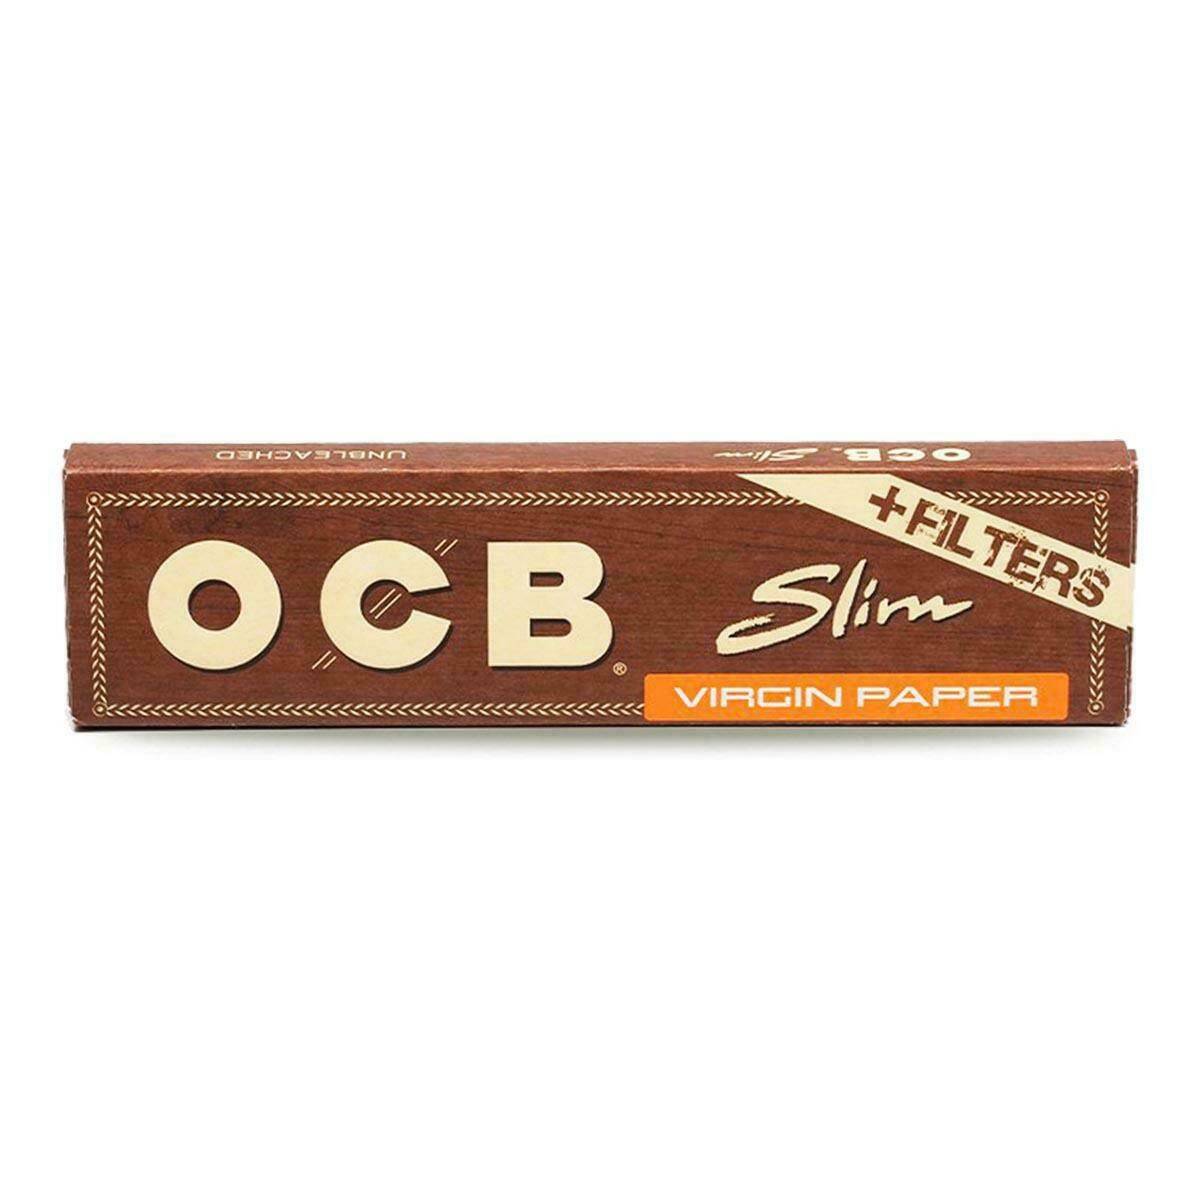 OCB Virgin Brown Slim + Filters